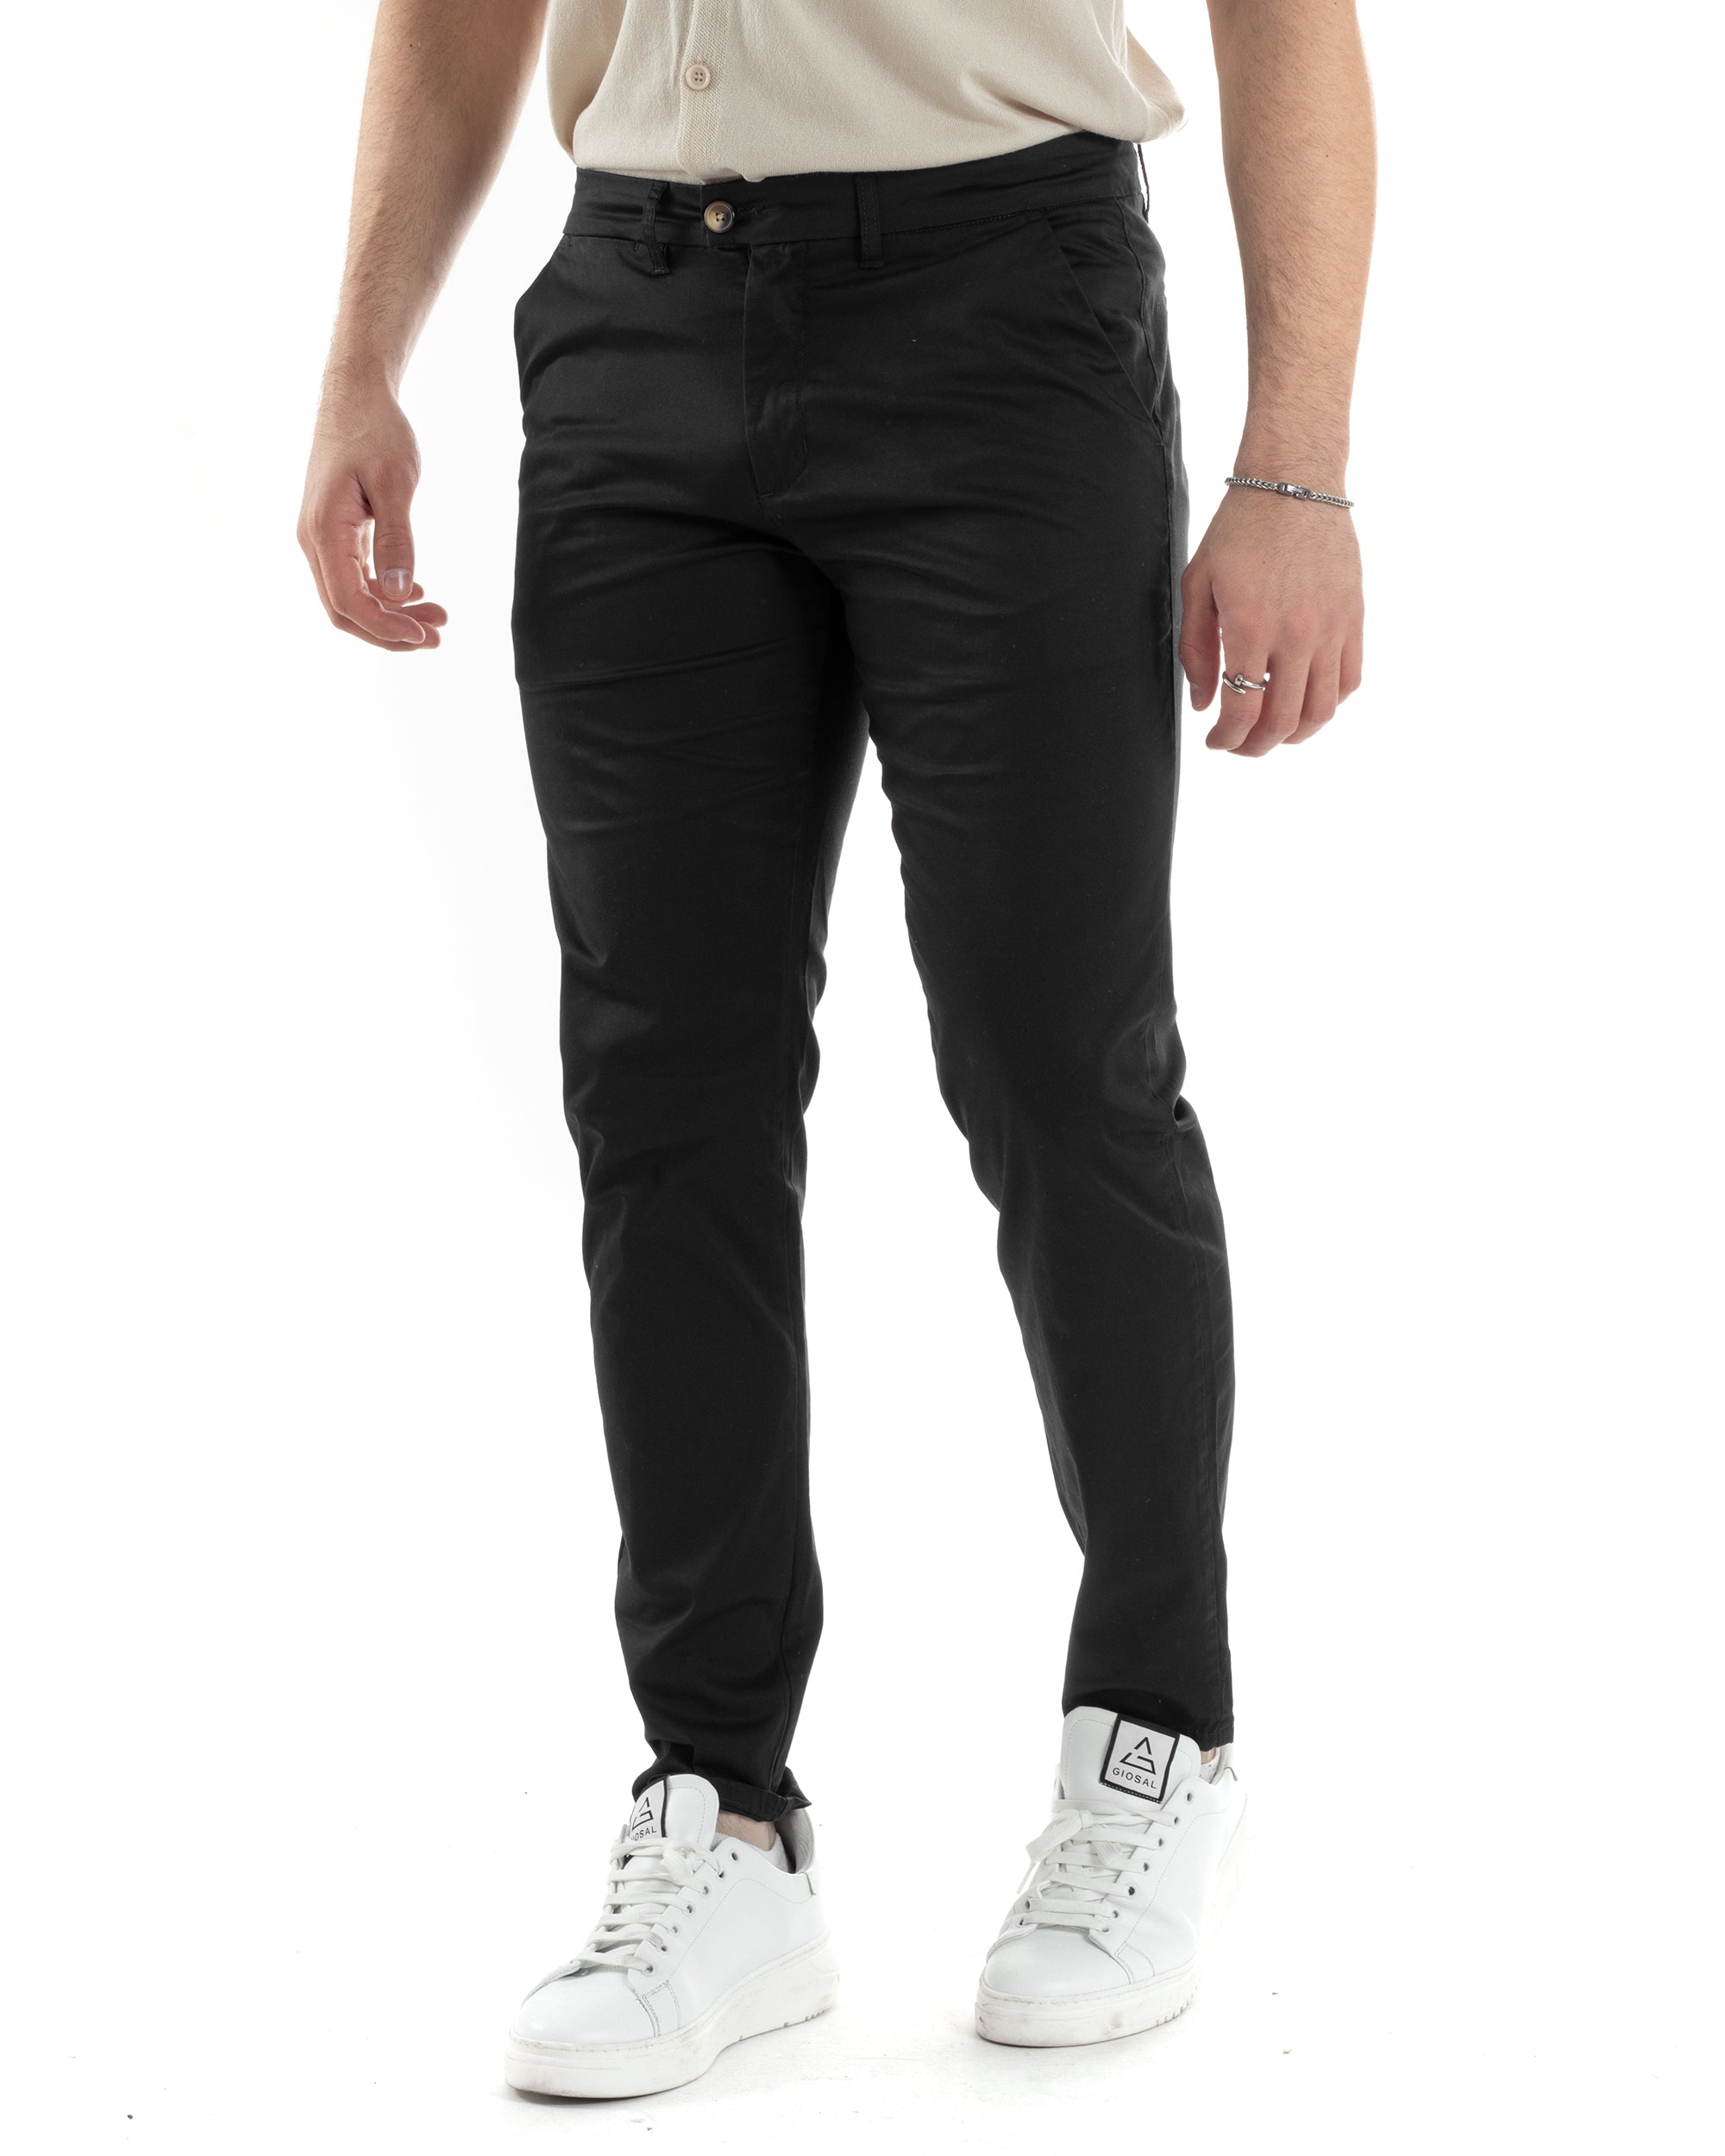 Pantaloni Uomo Cotone Raso Tasca America Slim Fit Abbottonatura Allungata Tinta Unita Nero GIOSAL-P6061A